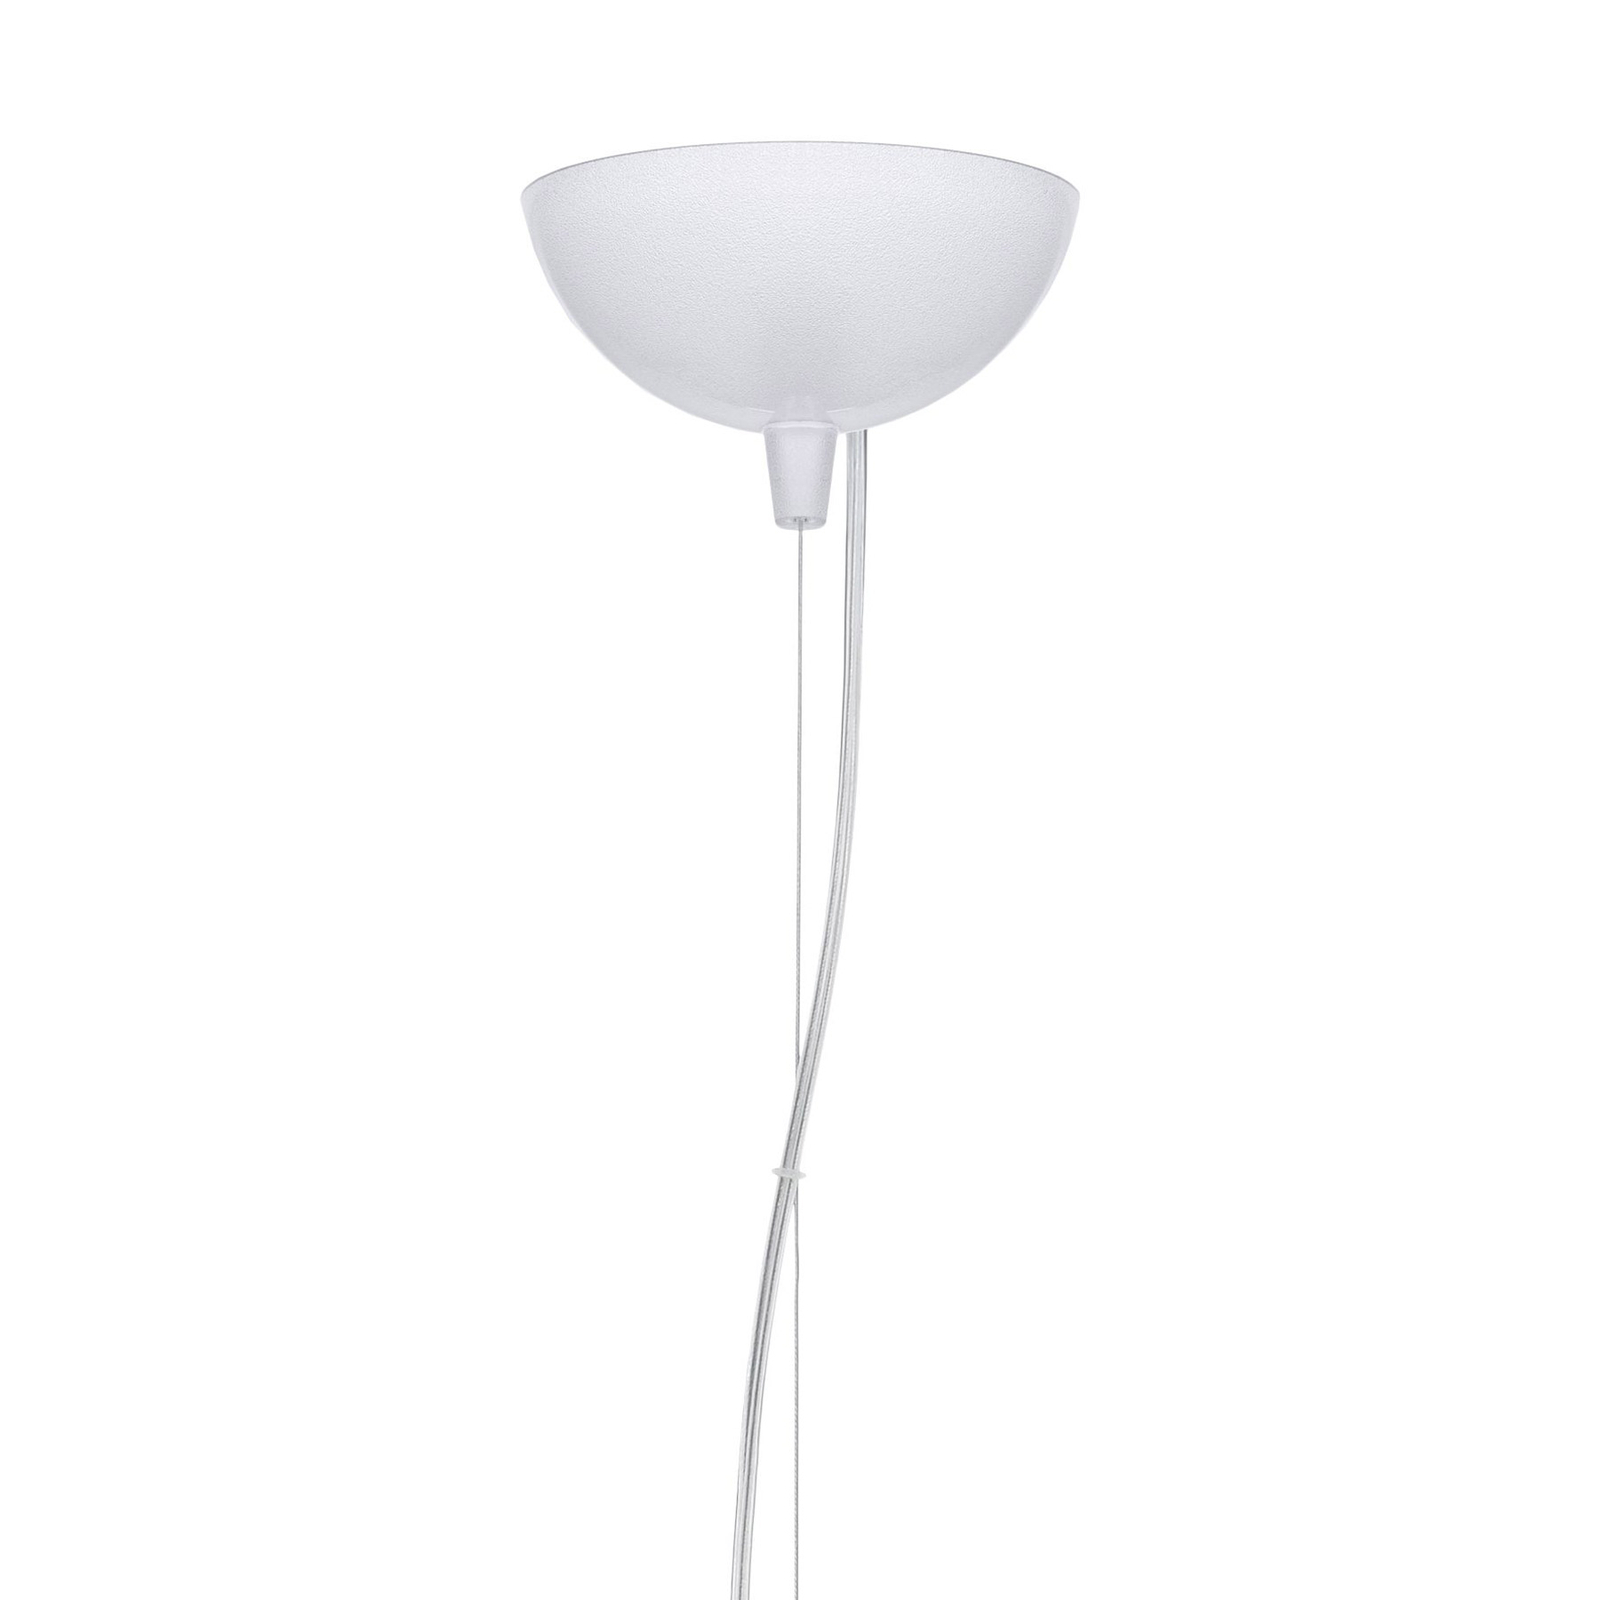 Kartell Bloom S1 LED hanging light G9, white